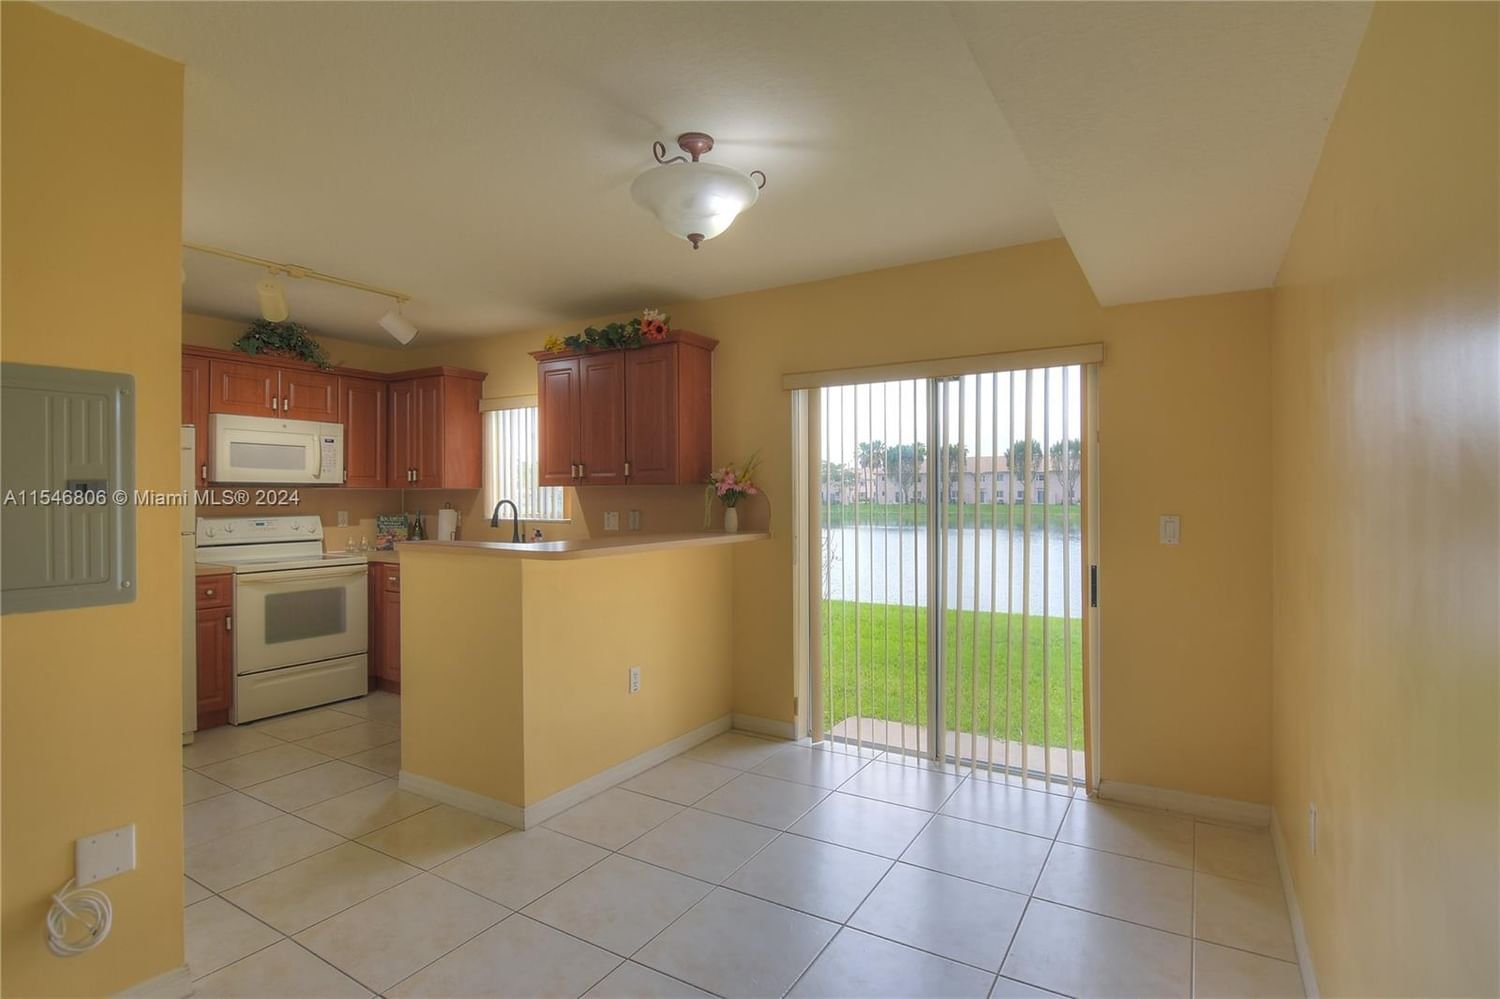 Real estate property located at 1250 26th St #101, Miami-Dade County, VENETIA GARDENS CONDO, Homestead, FL